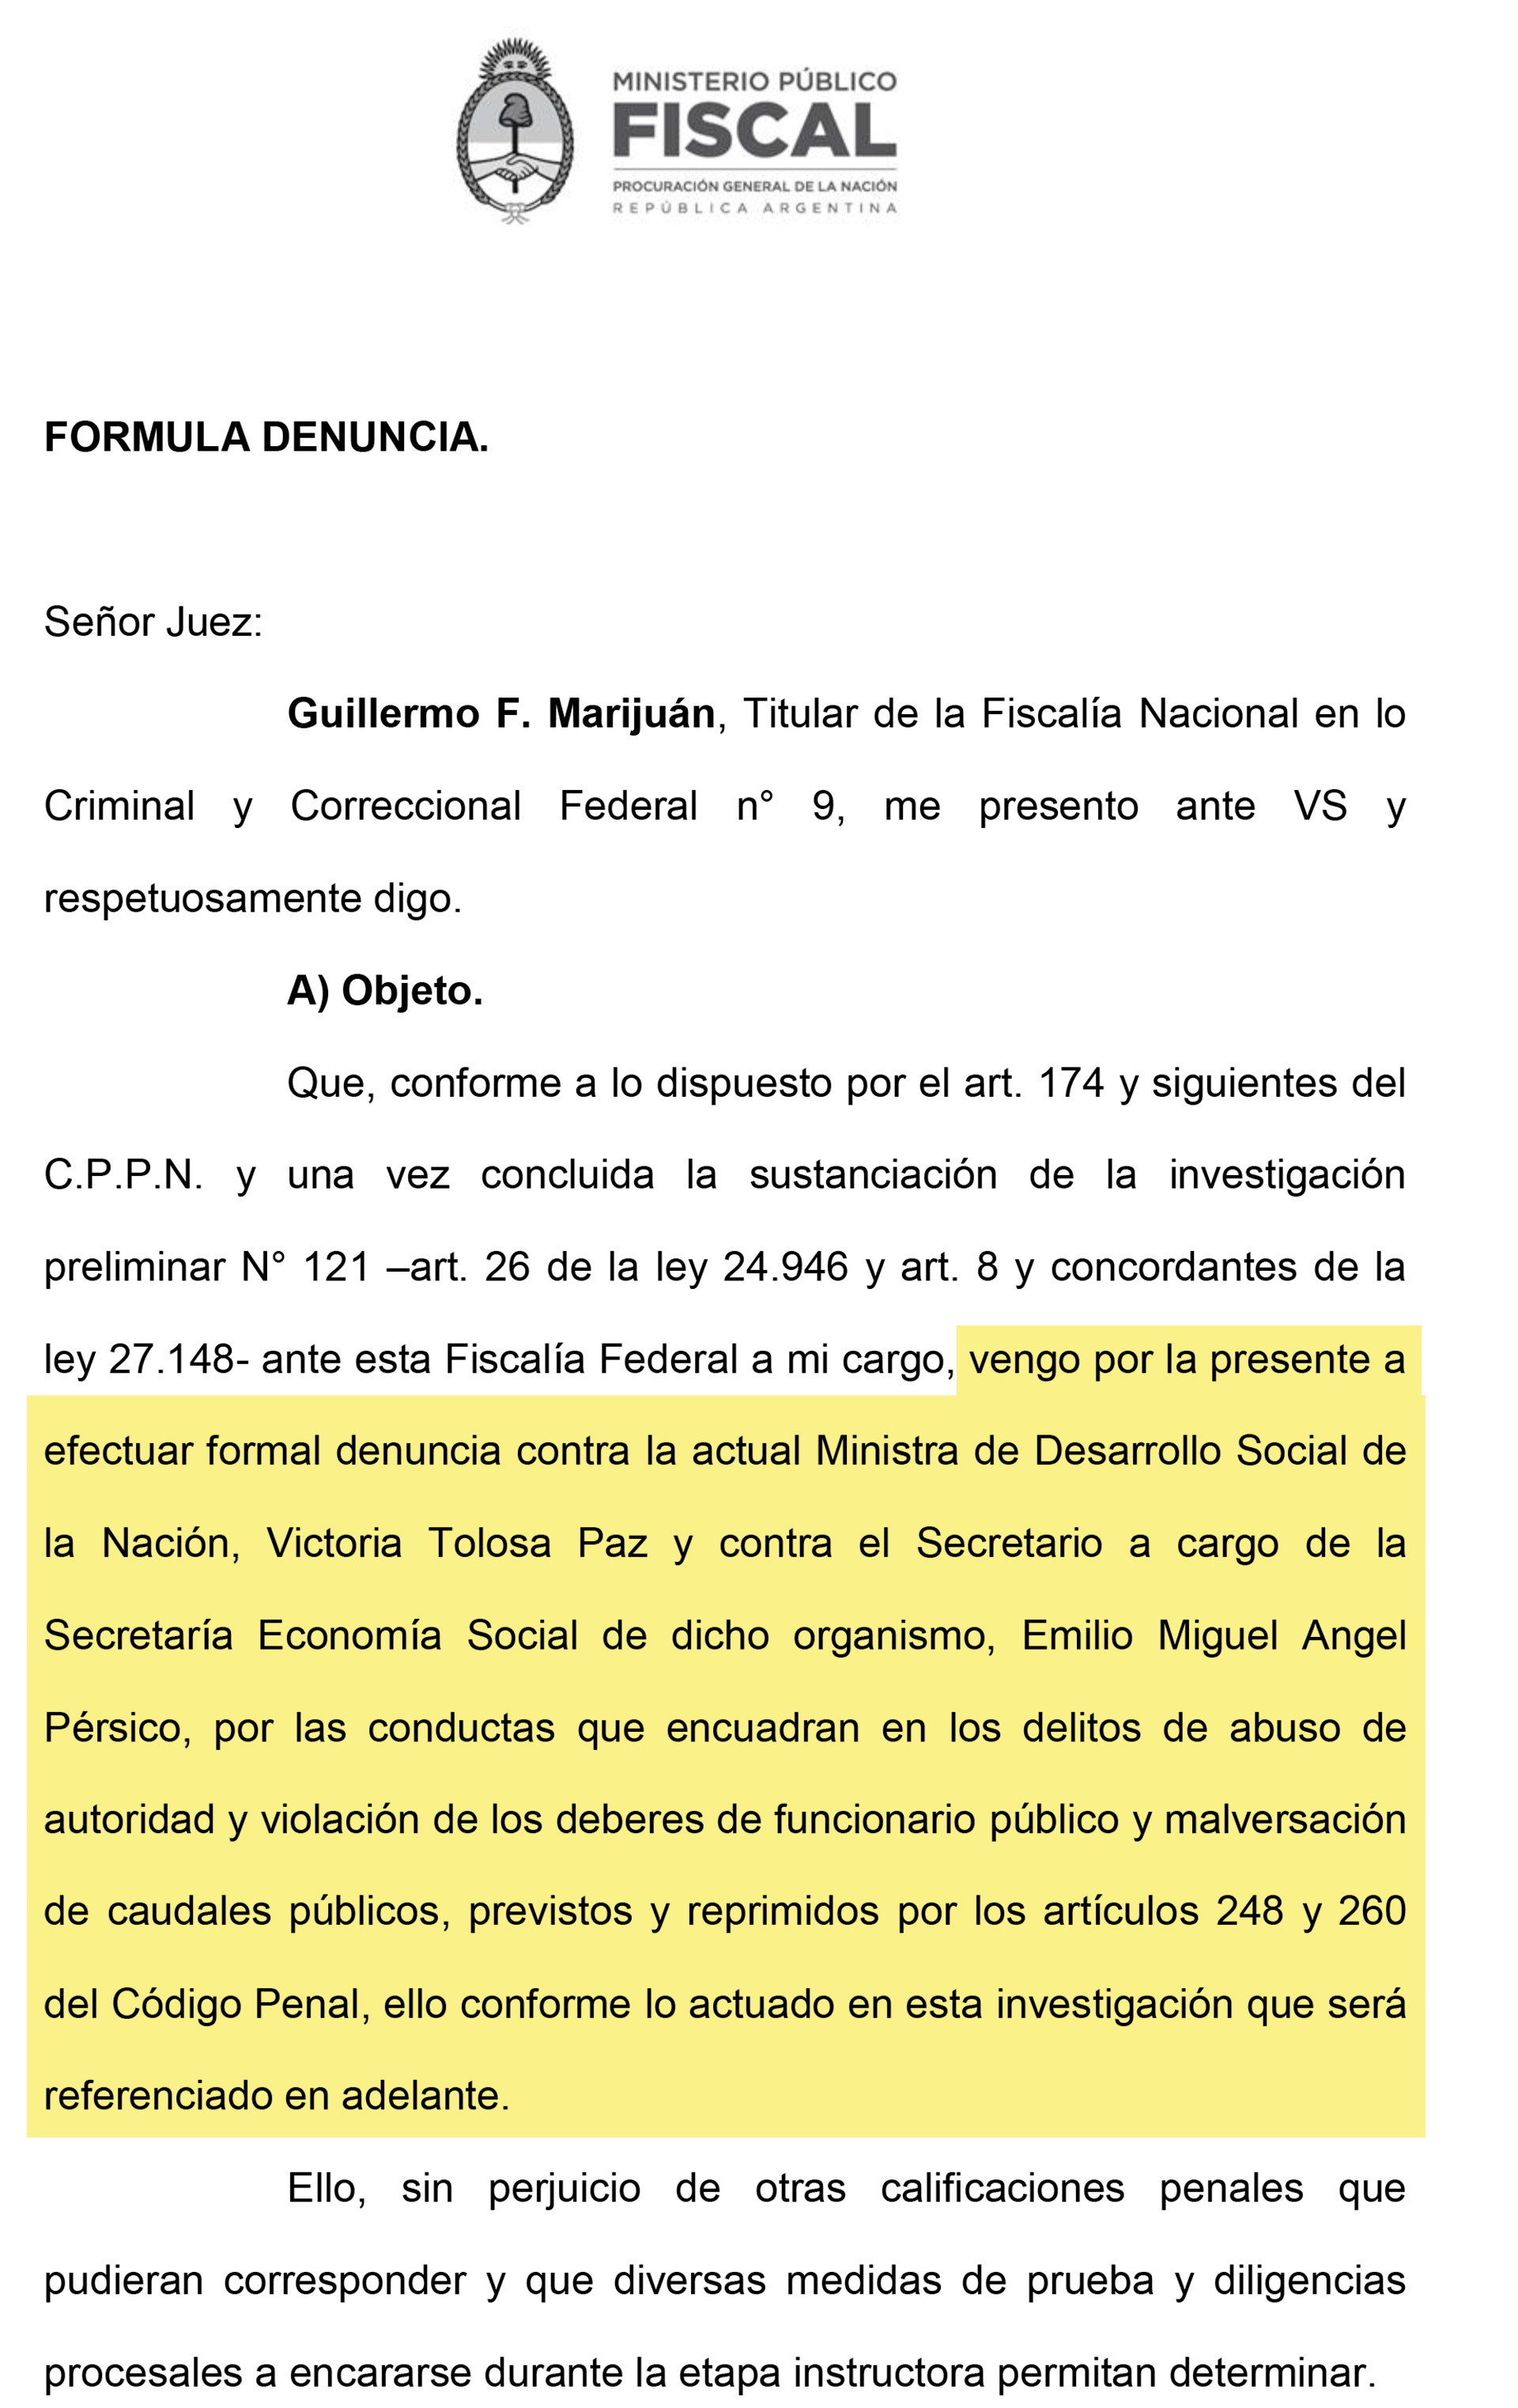 El fiscal Guillermo Marijuán denunció a la ministra de Desarrollo Social, Victoria Tolosa Paz y a Emilio Pérsico por incumplimiento en sus funciones